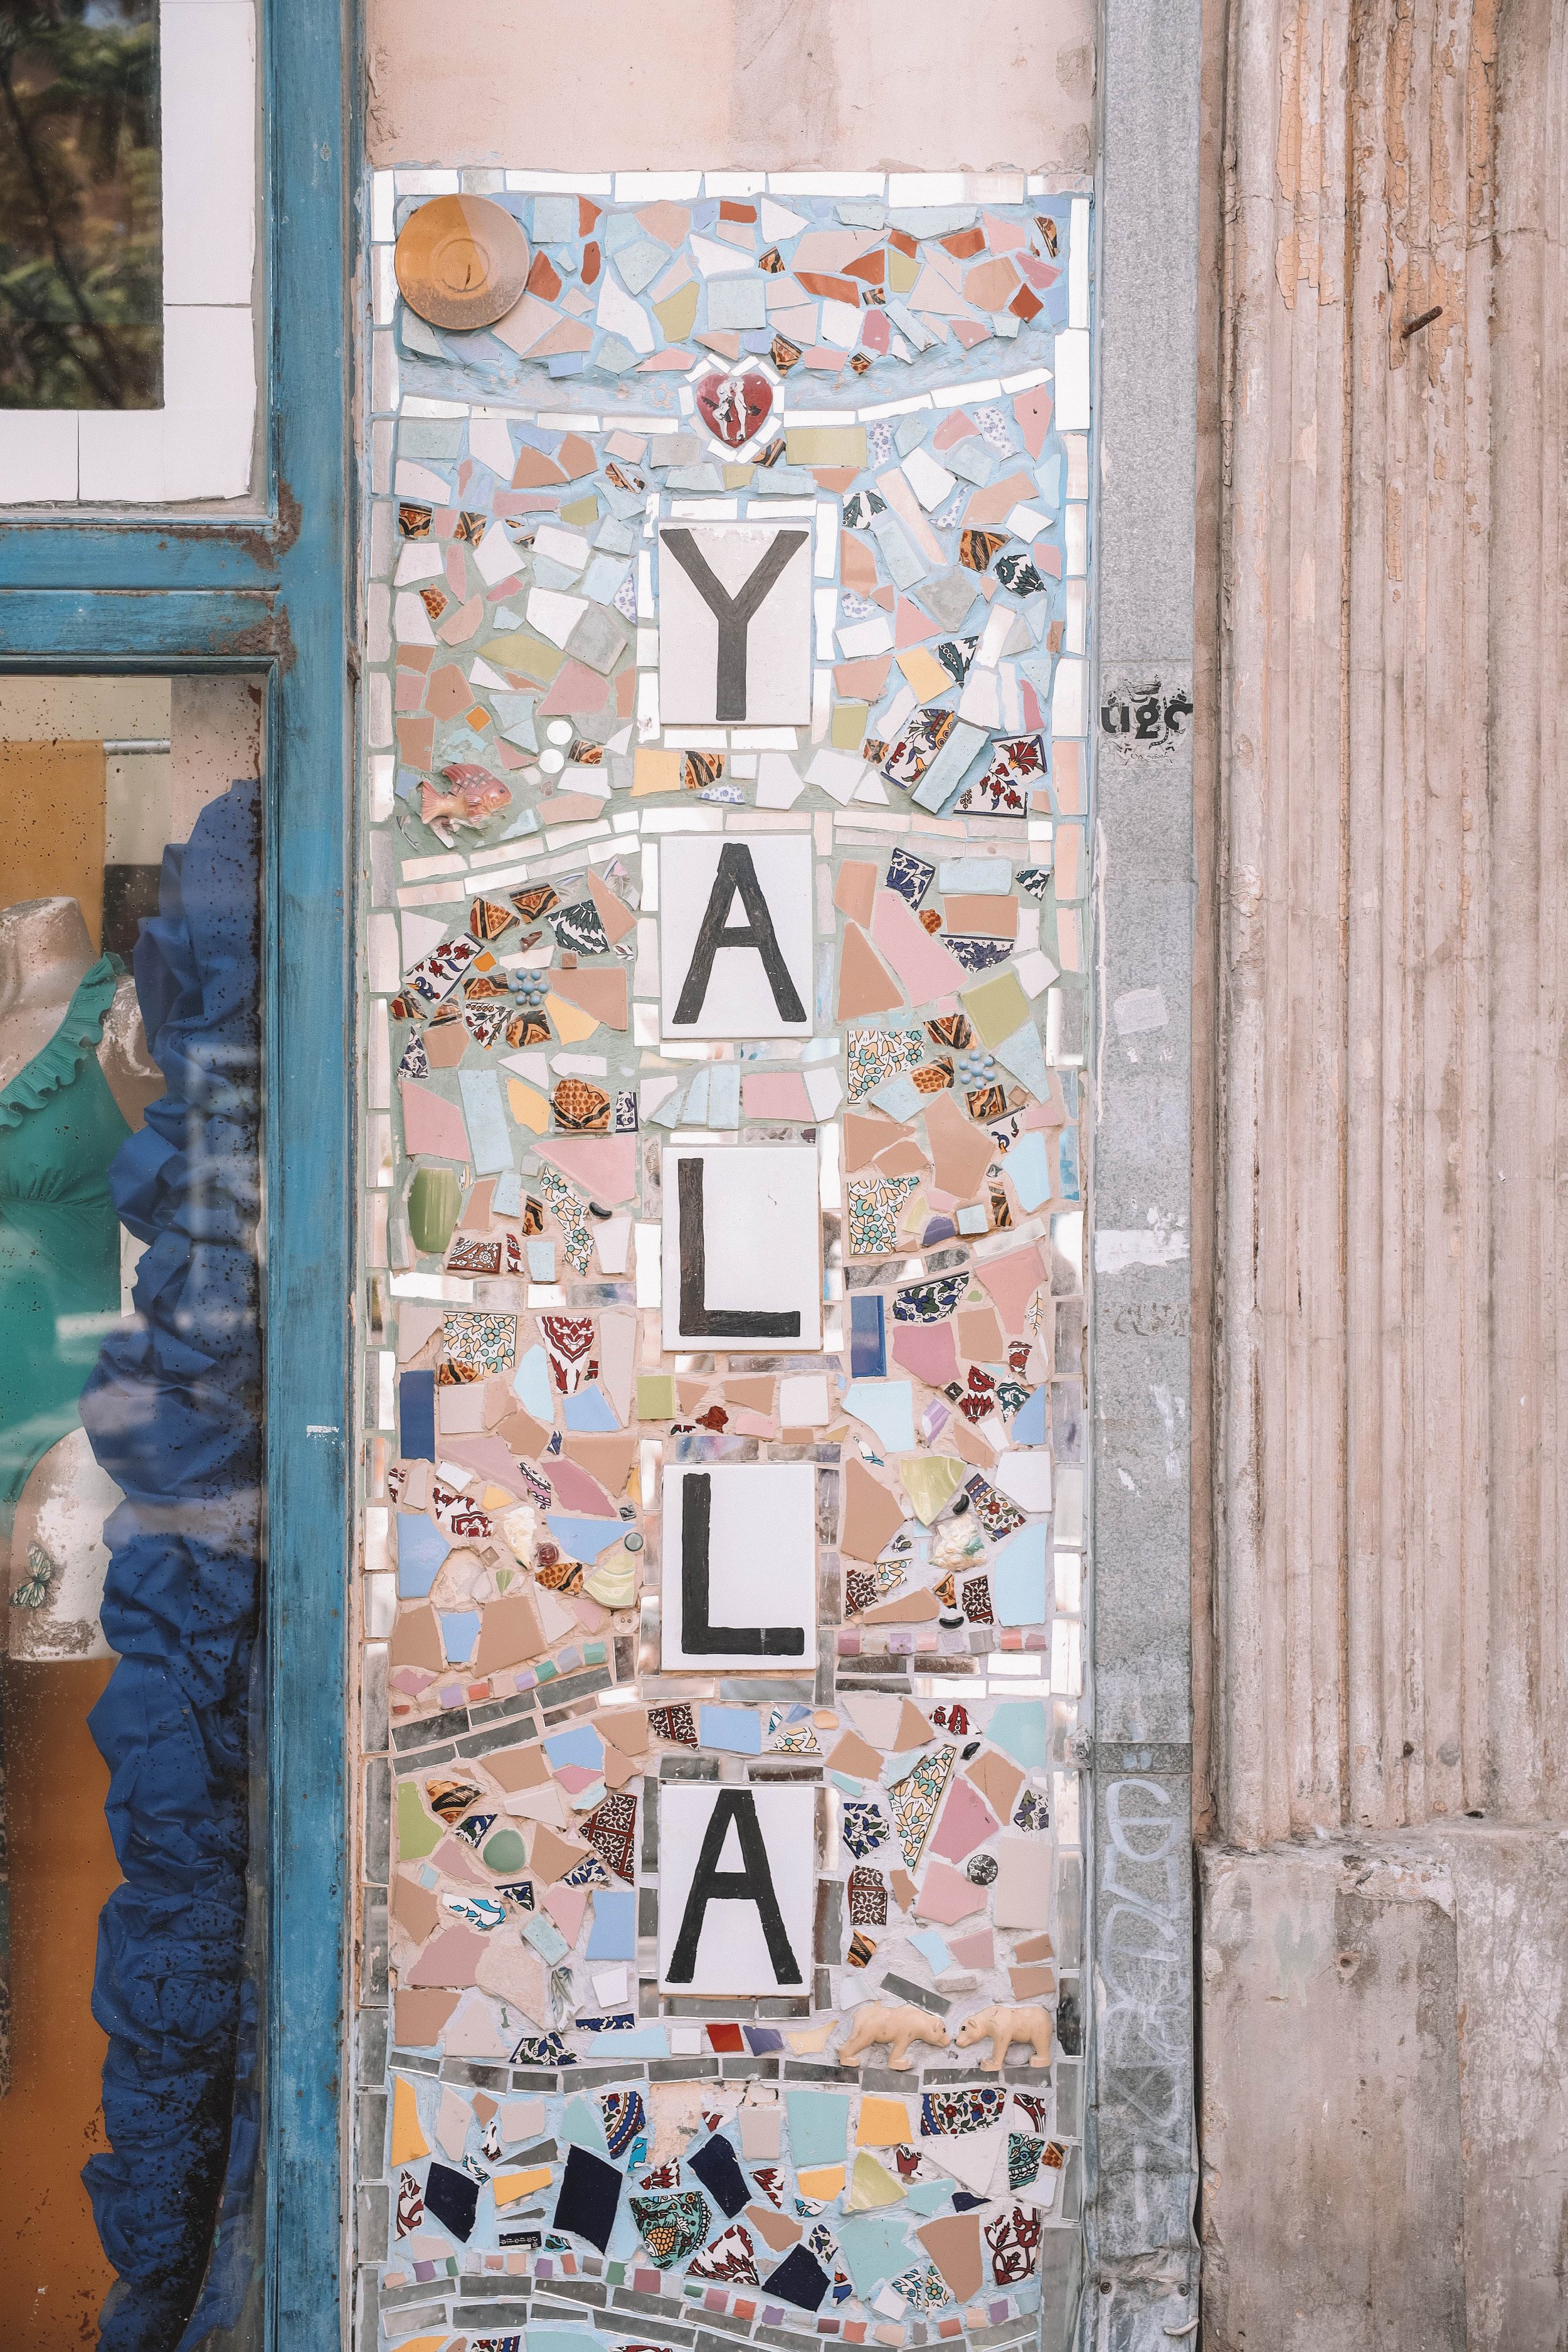 Yalla mosaic - Florentine - Tel Aviv - Israel